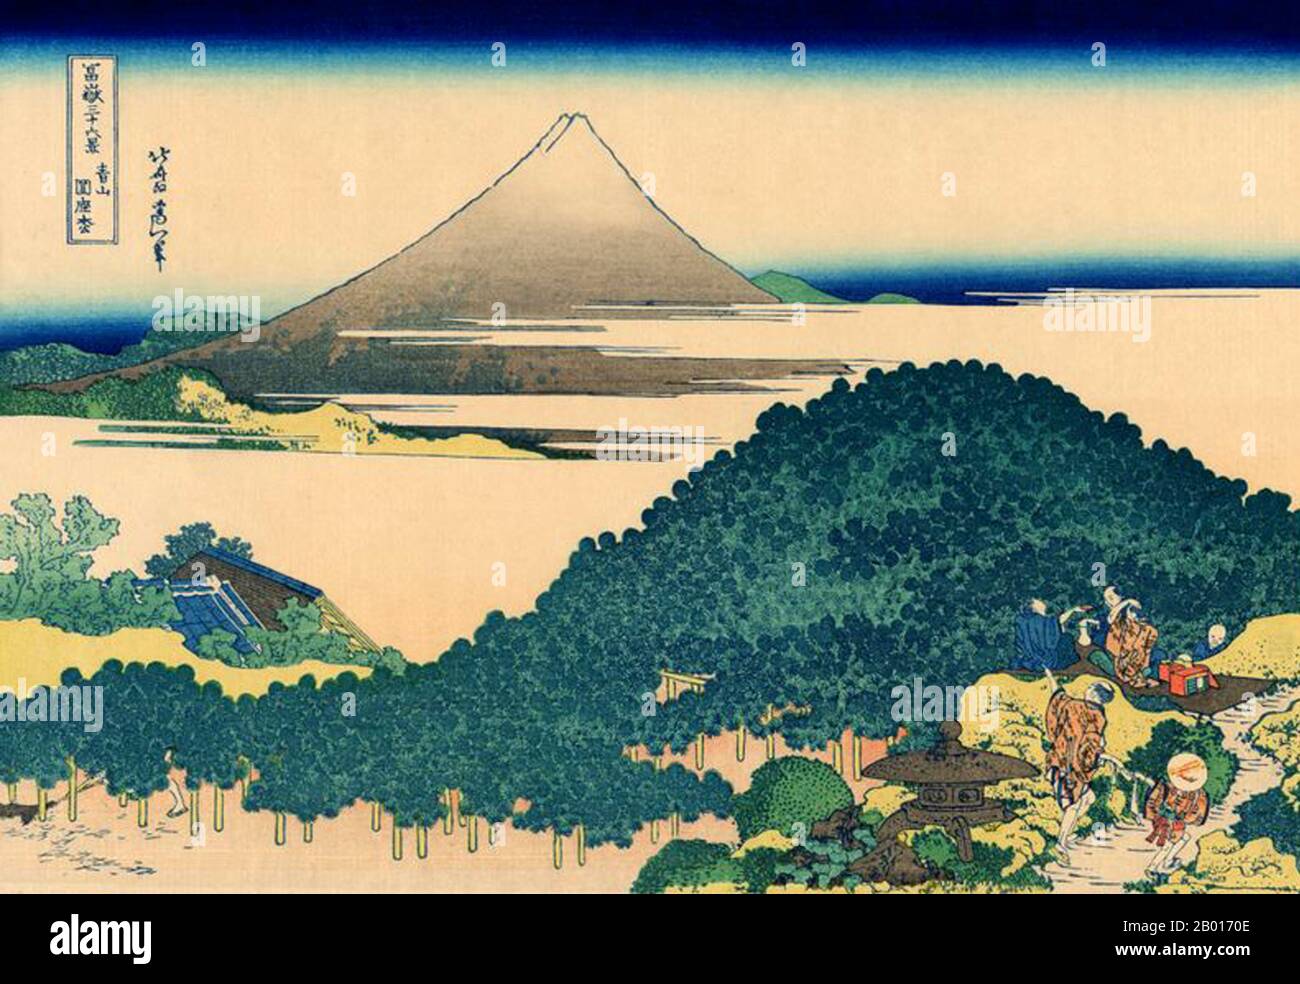 Japan: ‘The Circular Pine Trees of Aoyama’. Ukiyo-e Holzschnitt aus der Serie '36 Ansichten des Fuji' von Katsushika Hokusai (31. Oktober 1760 - 10. Mai 1849), c. 1830. Der Fuji ist mit 3.776,24 m (12.389 ft) der höchste Berg Japans. Der Fuji, ein aktiver Stratovulkan, der zuletzt 1707–08 ausbrach, liegt etwa 100 km südwestlich von Tokio. Der außergewöhnlich symmetrische Kegel des Fuji ist ein bekanntes Symbol und Symbol Japans und wird häufig in Kunst und Fotografien dargestellt. Es ist eines der ‘drei Heiligen Berge’ Japans, zusammen mit dem Berg Tate und dem Berg Haku. Stockfoto